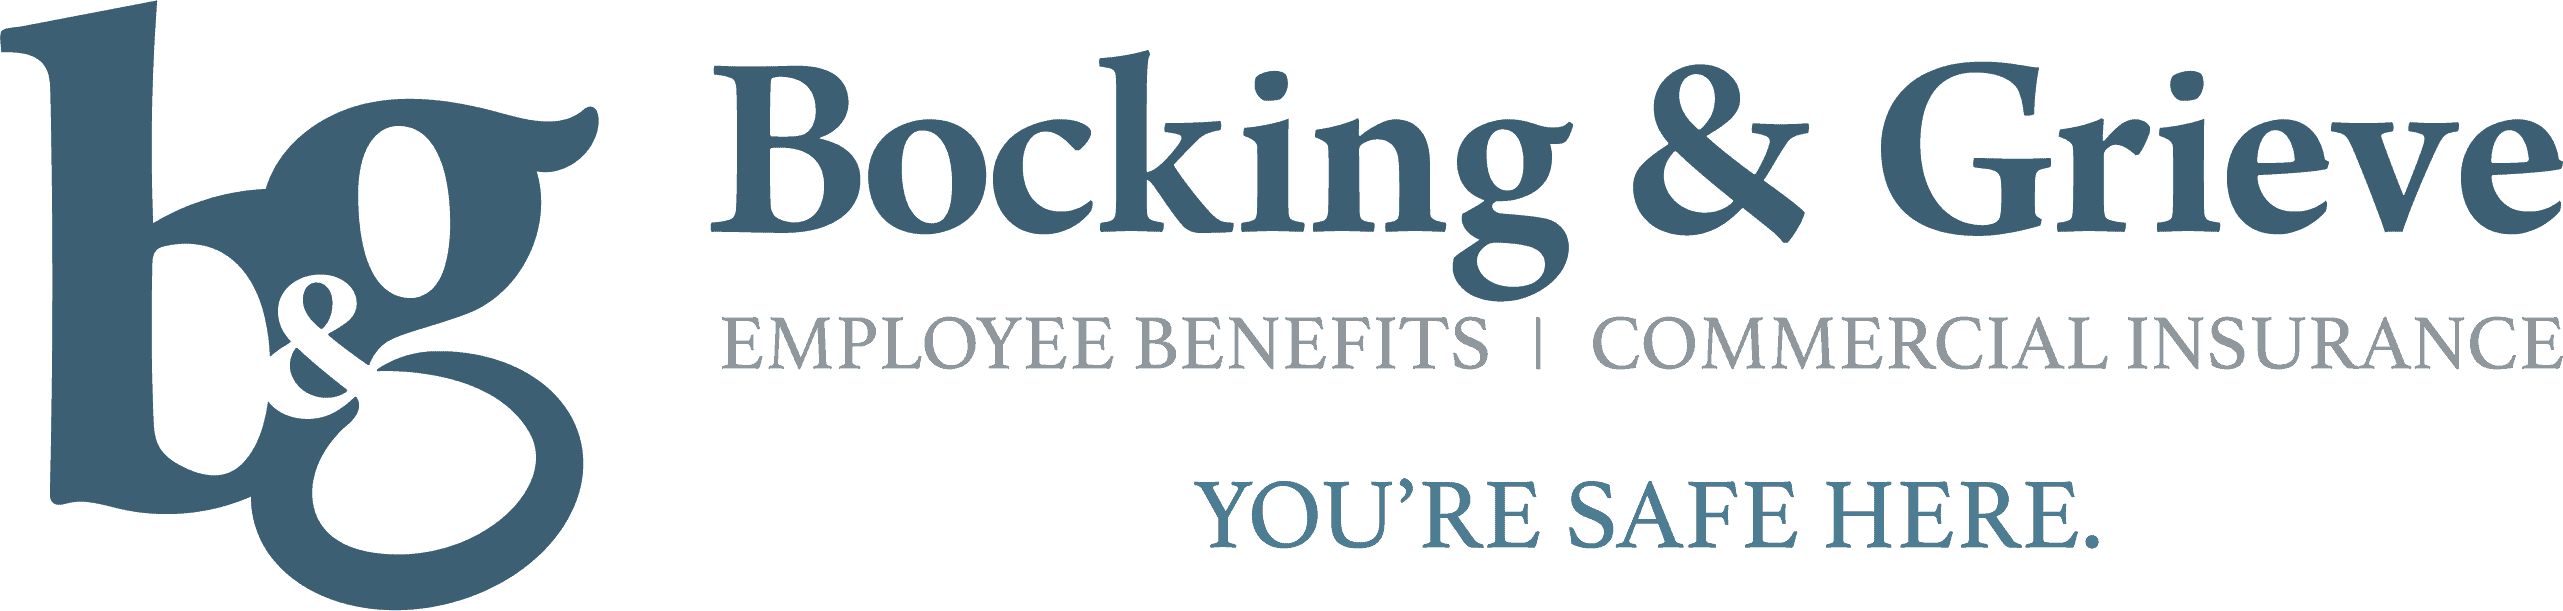 Bocking-Greive-Logo